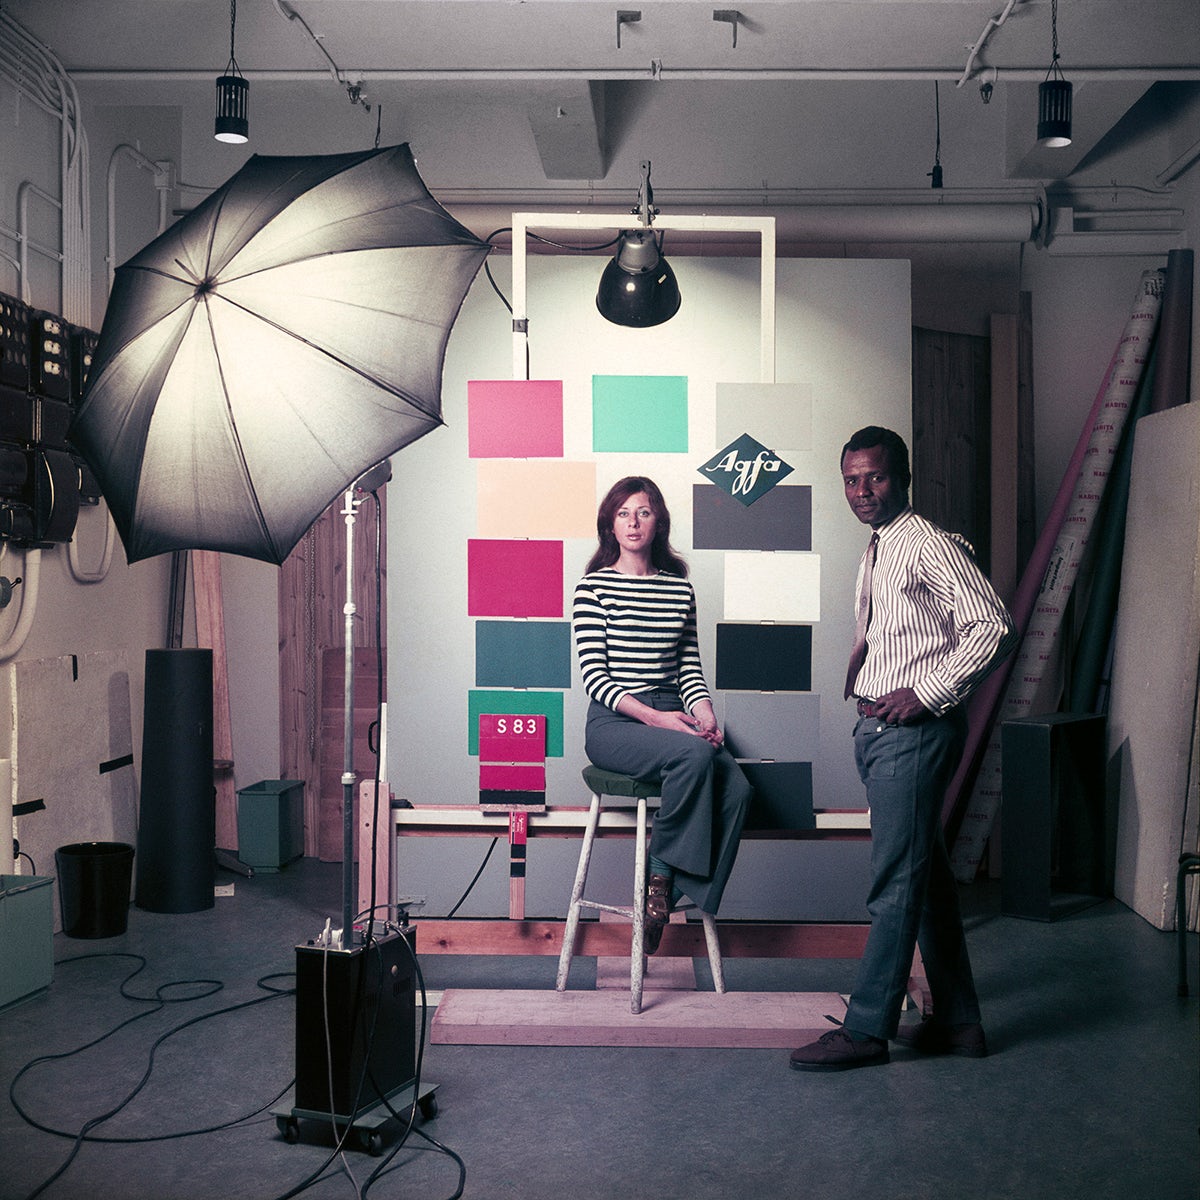 James Barnor at the studio Agfa-Gevaert in Mortsel, Belgium, 1969